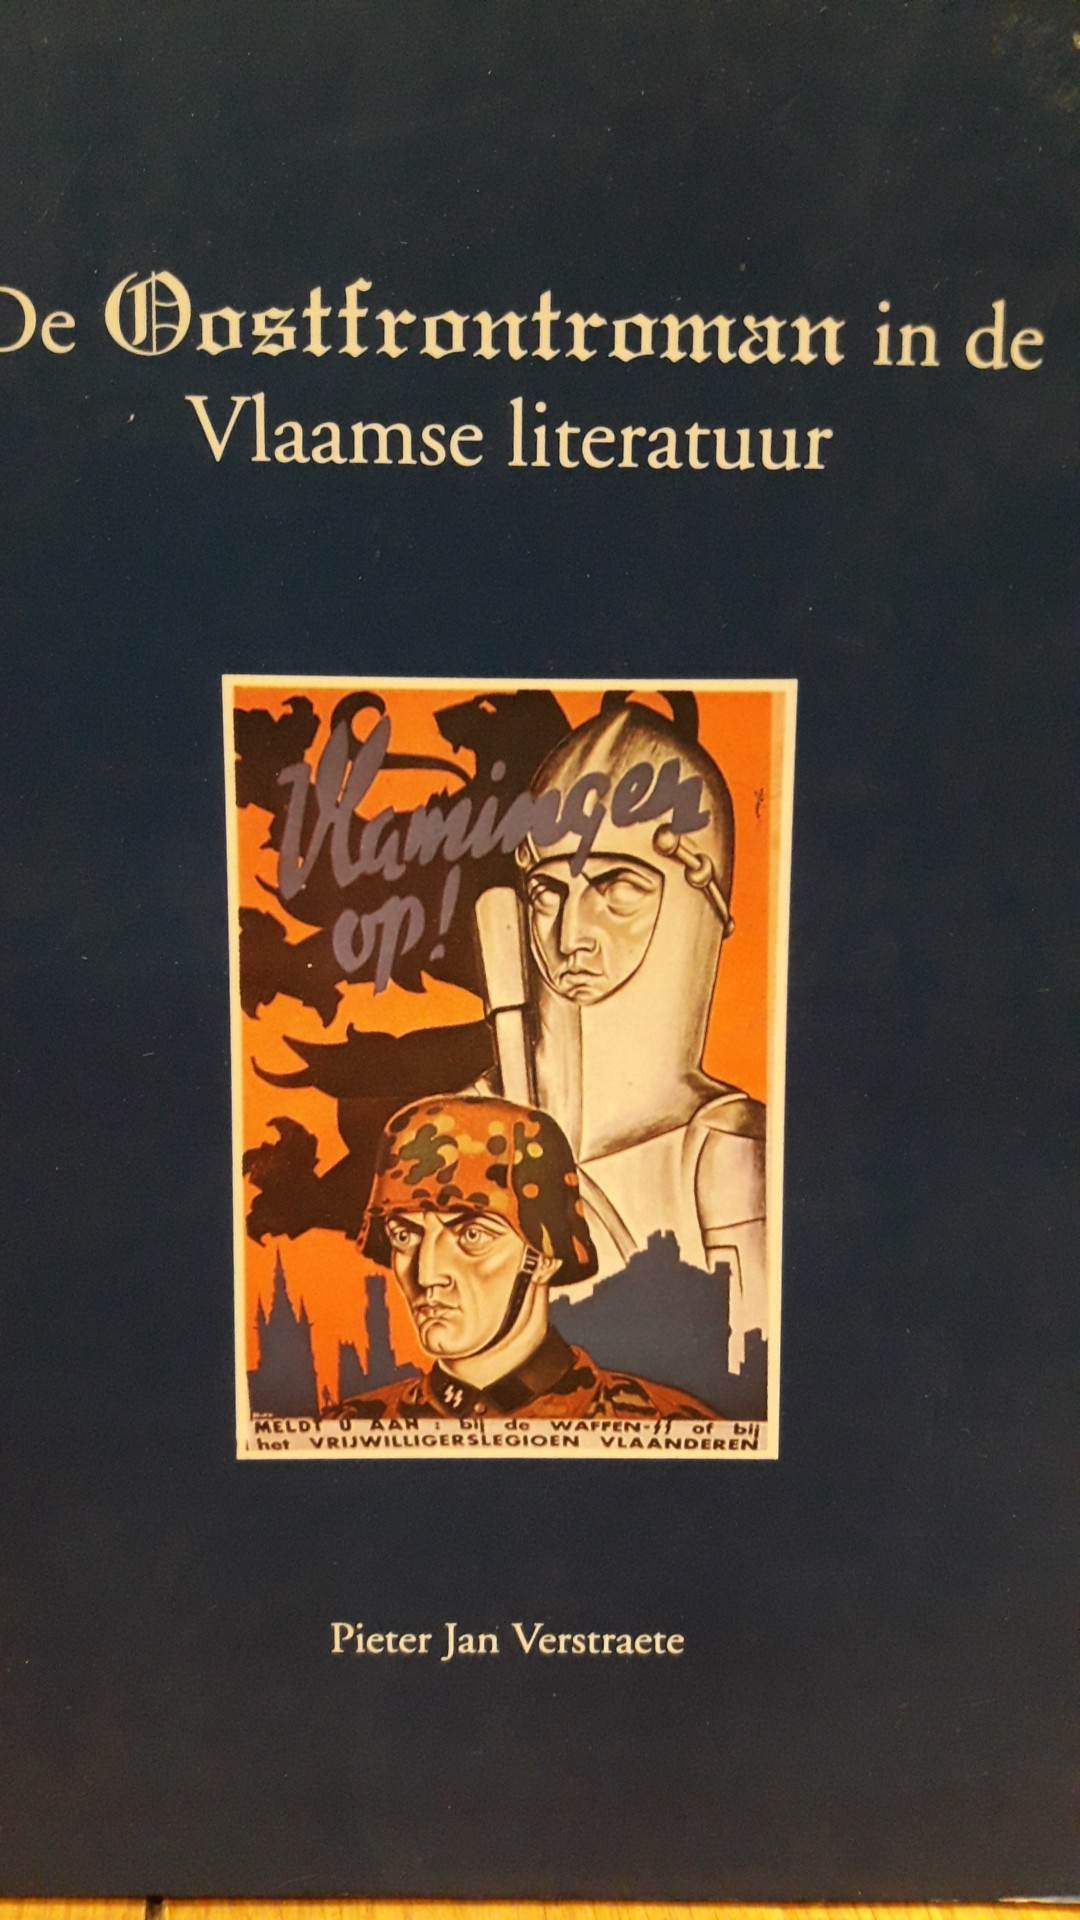 De oostfrontroman in de Vlaamse Literatuur door Pieter Jan Verstraete / 77 blz